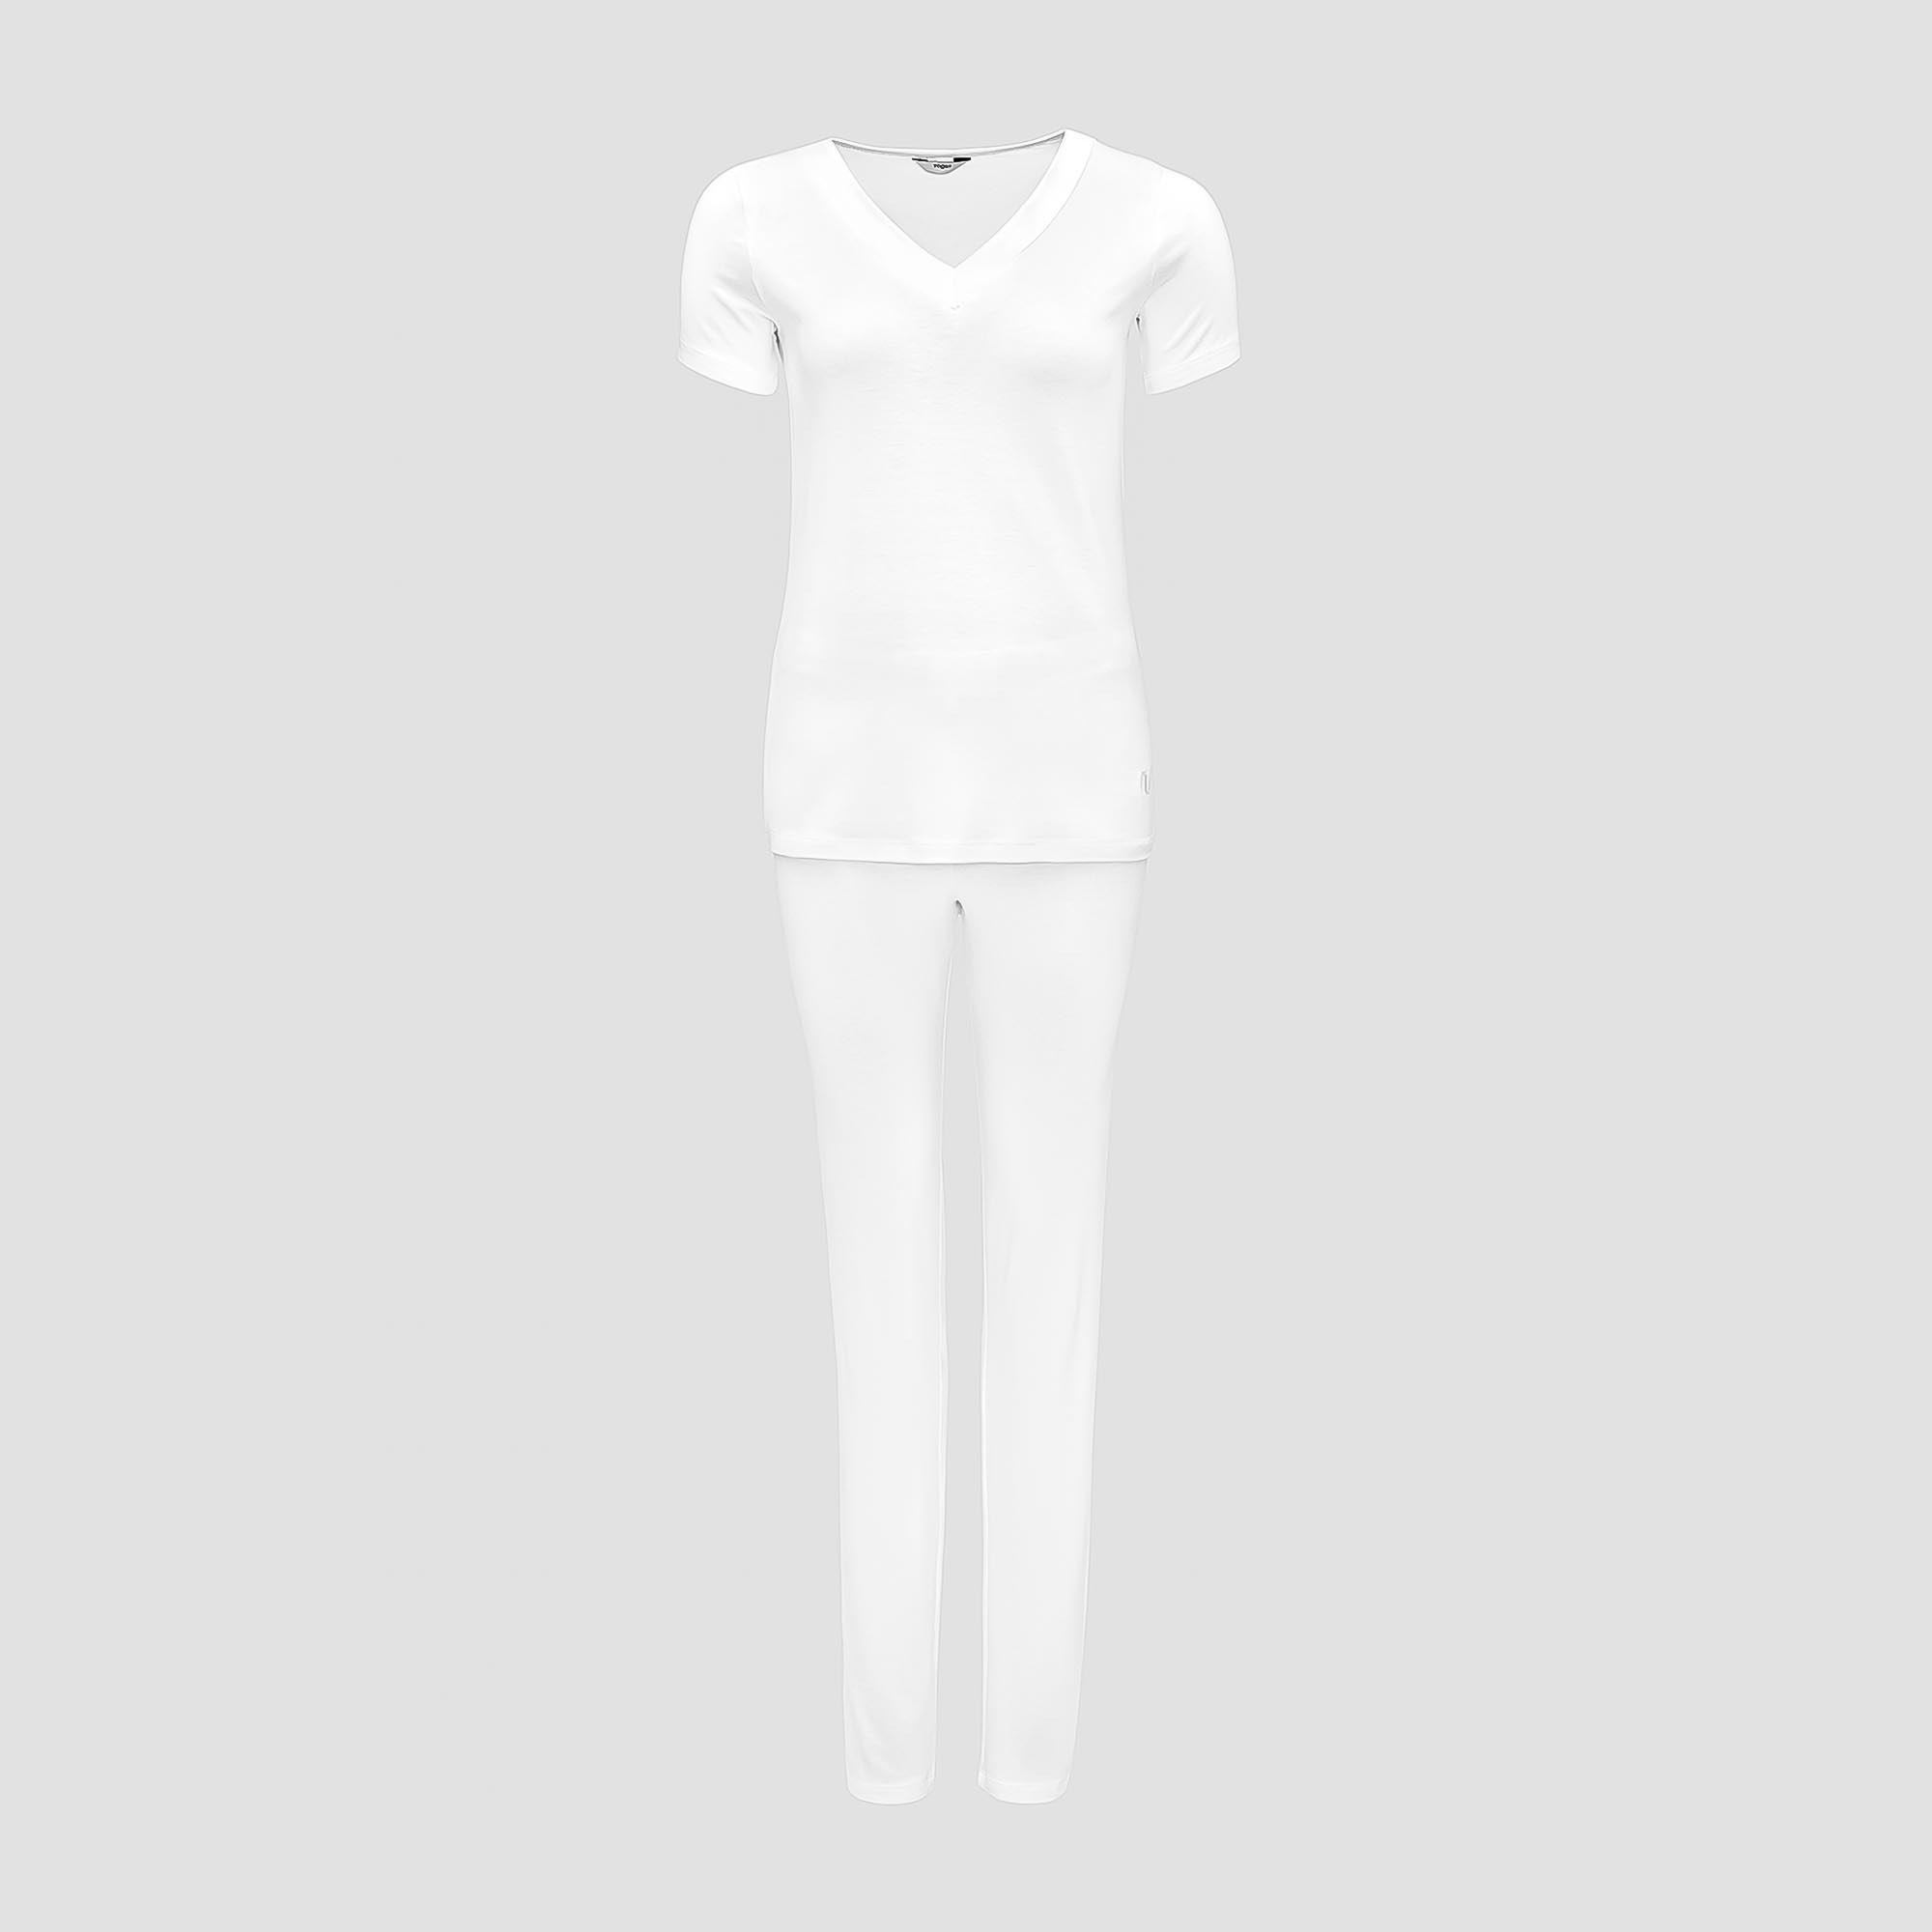 Пижама Togas Ингелла белая женская M(46) 2 предмета жен пижама с шортами инь янь белый р 46